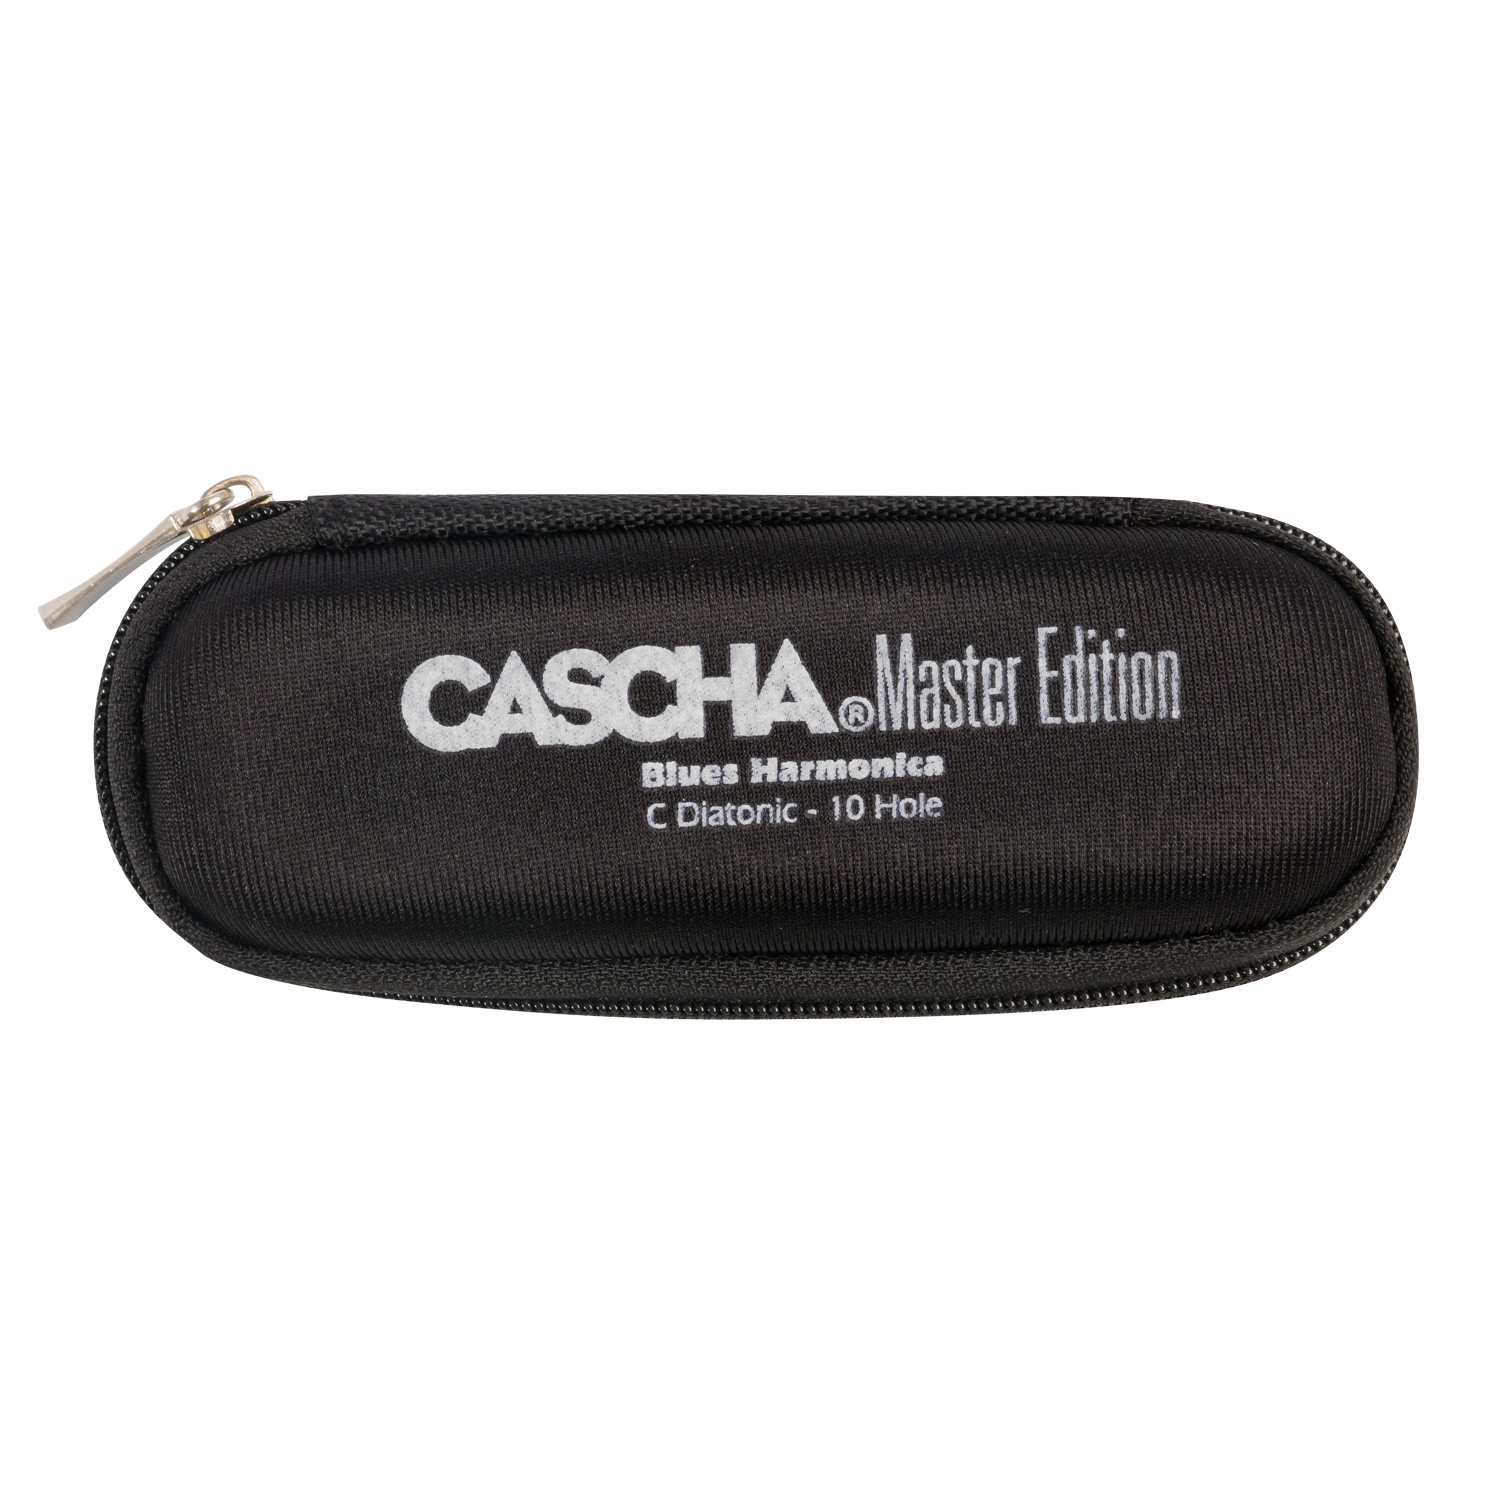 Детальная картинка товара Cascha HH-2058 Master Edition Blues C в магазине Музыкальная Тема